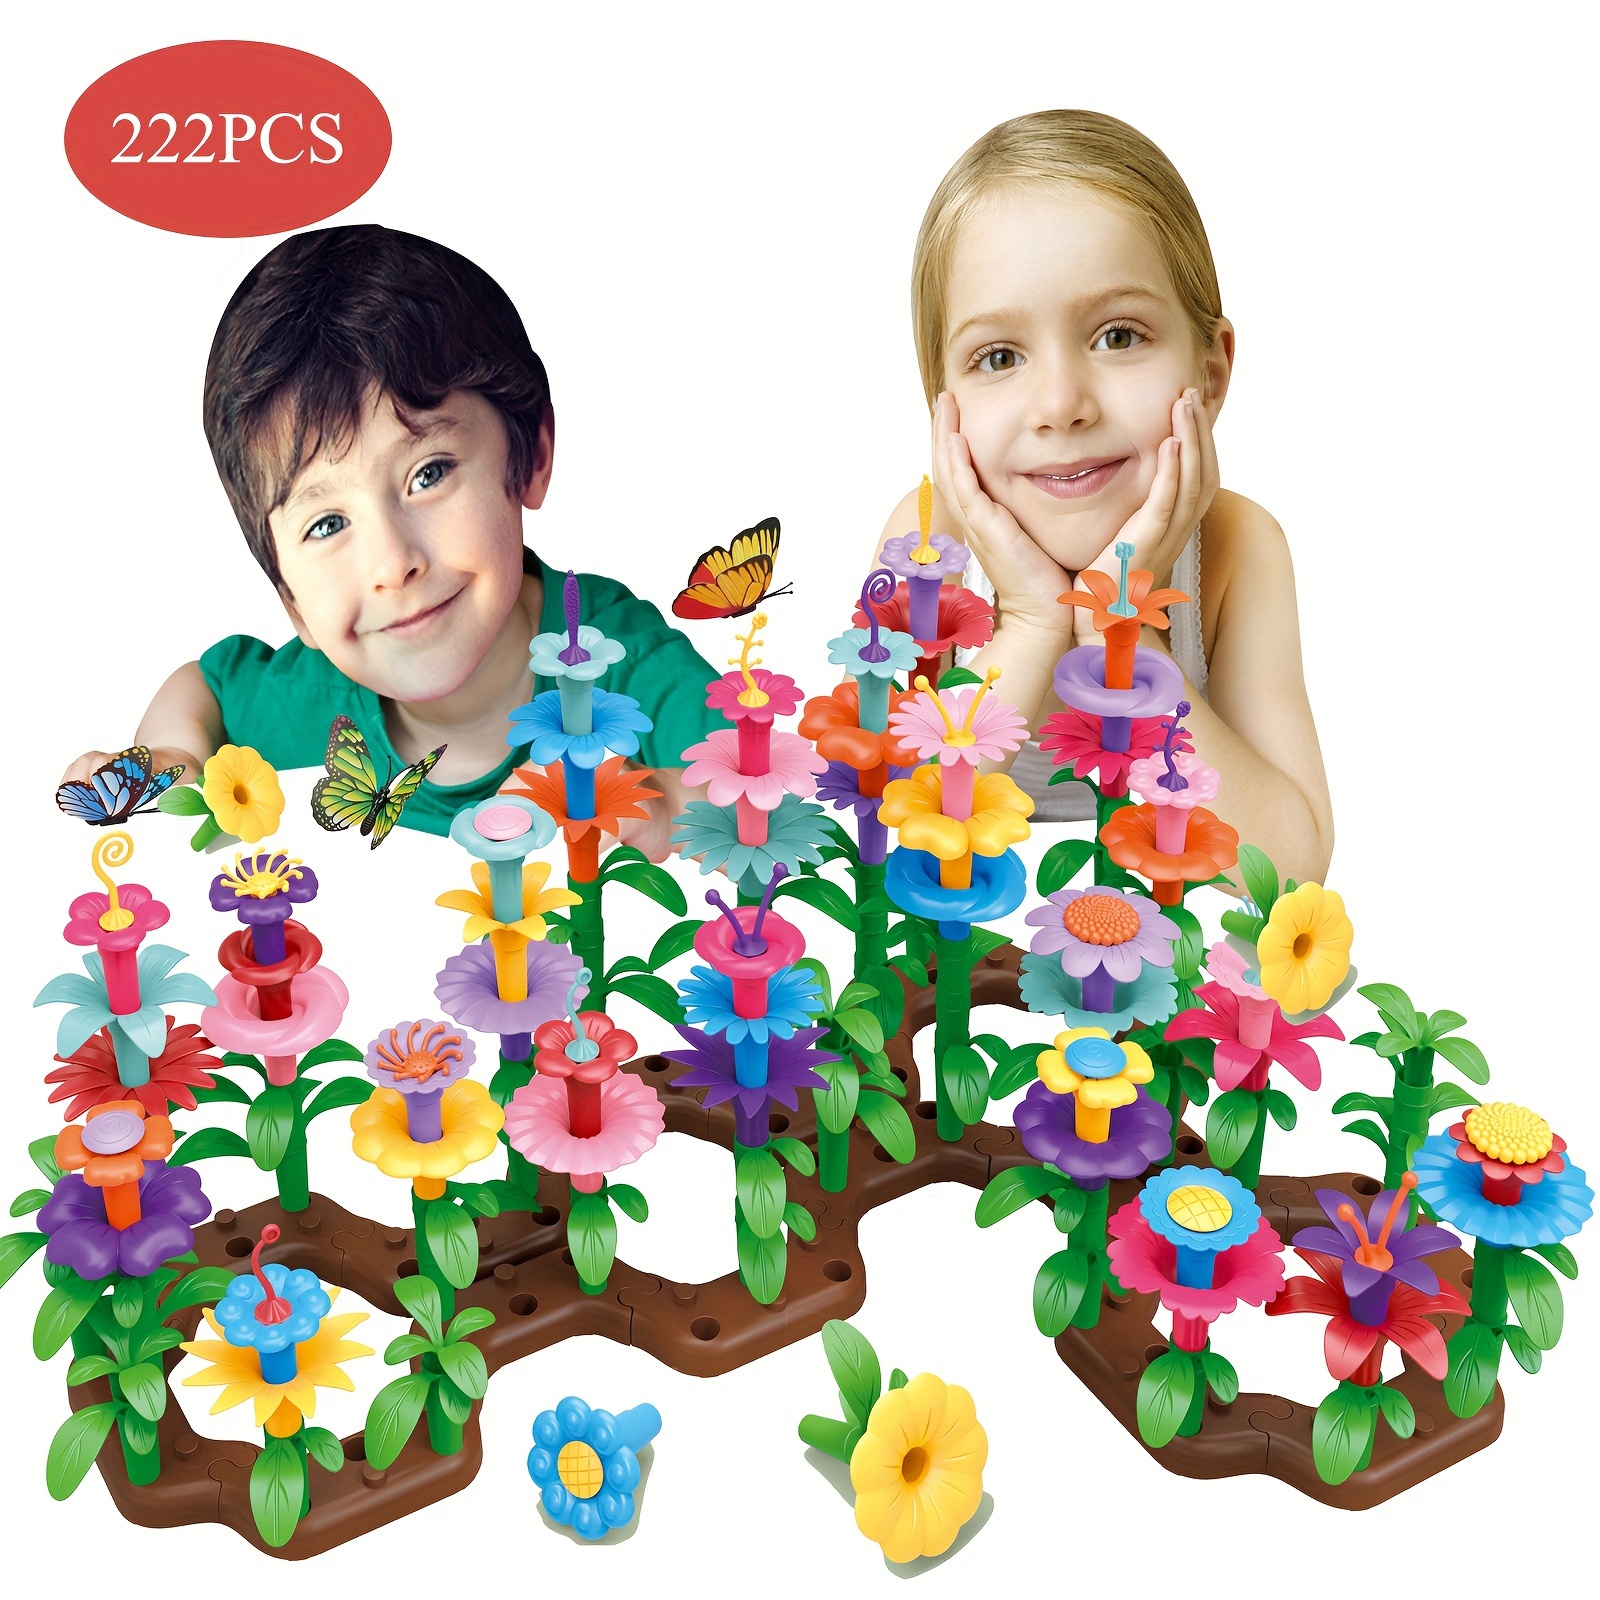 222pcs Serie de juguetes creativos de arreglos florales y jardín siempre  cambiante para niños y niñas, juguetes de rompecabezas DIY para cumpleaños,  N